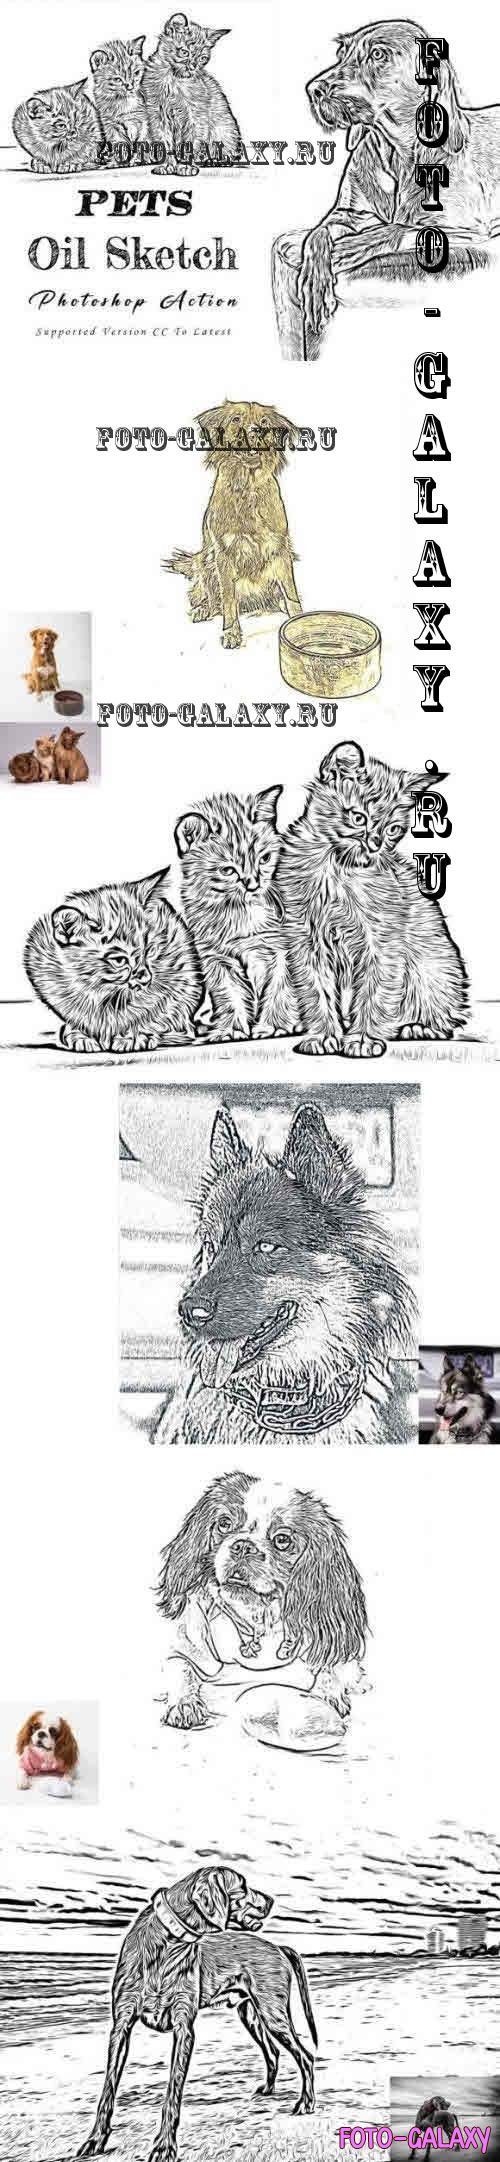 Pets Oil Sketch Photoshop Action - 11005026